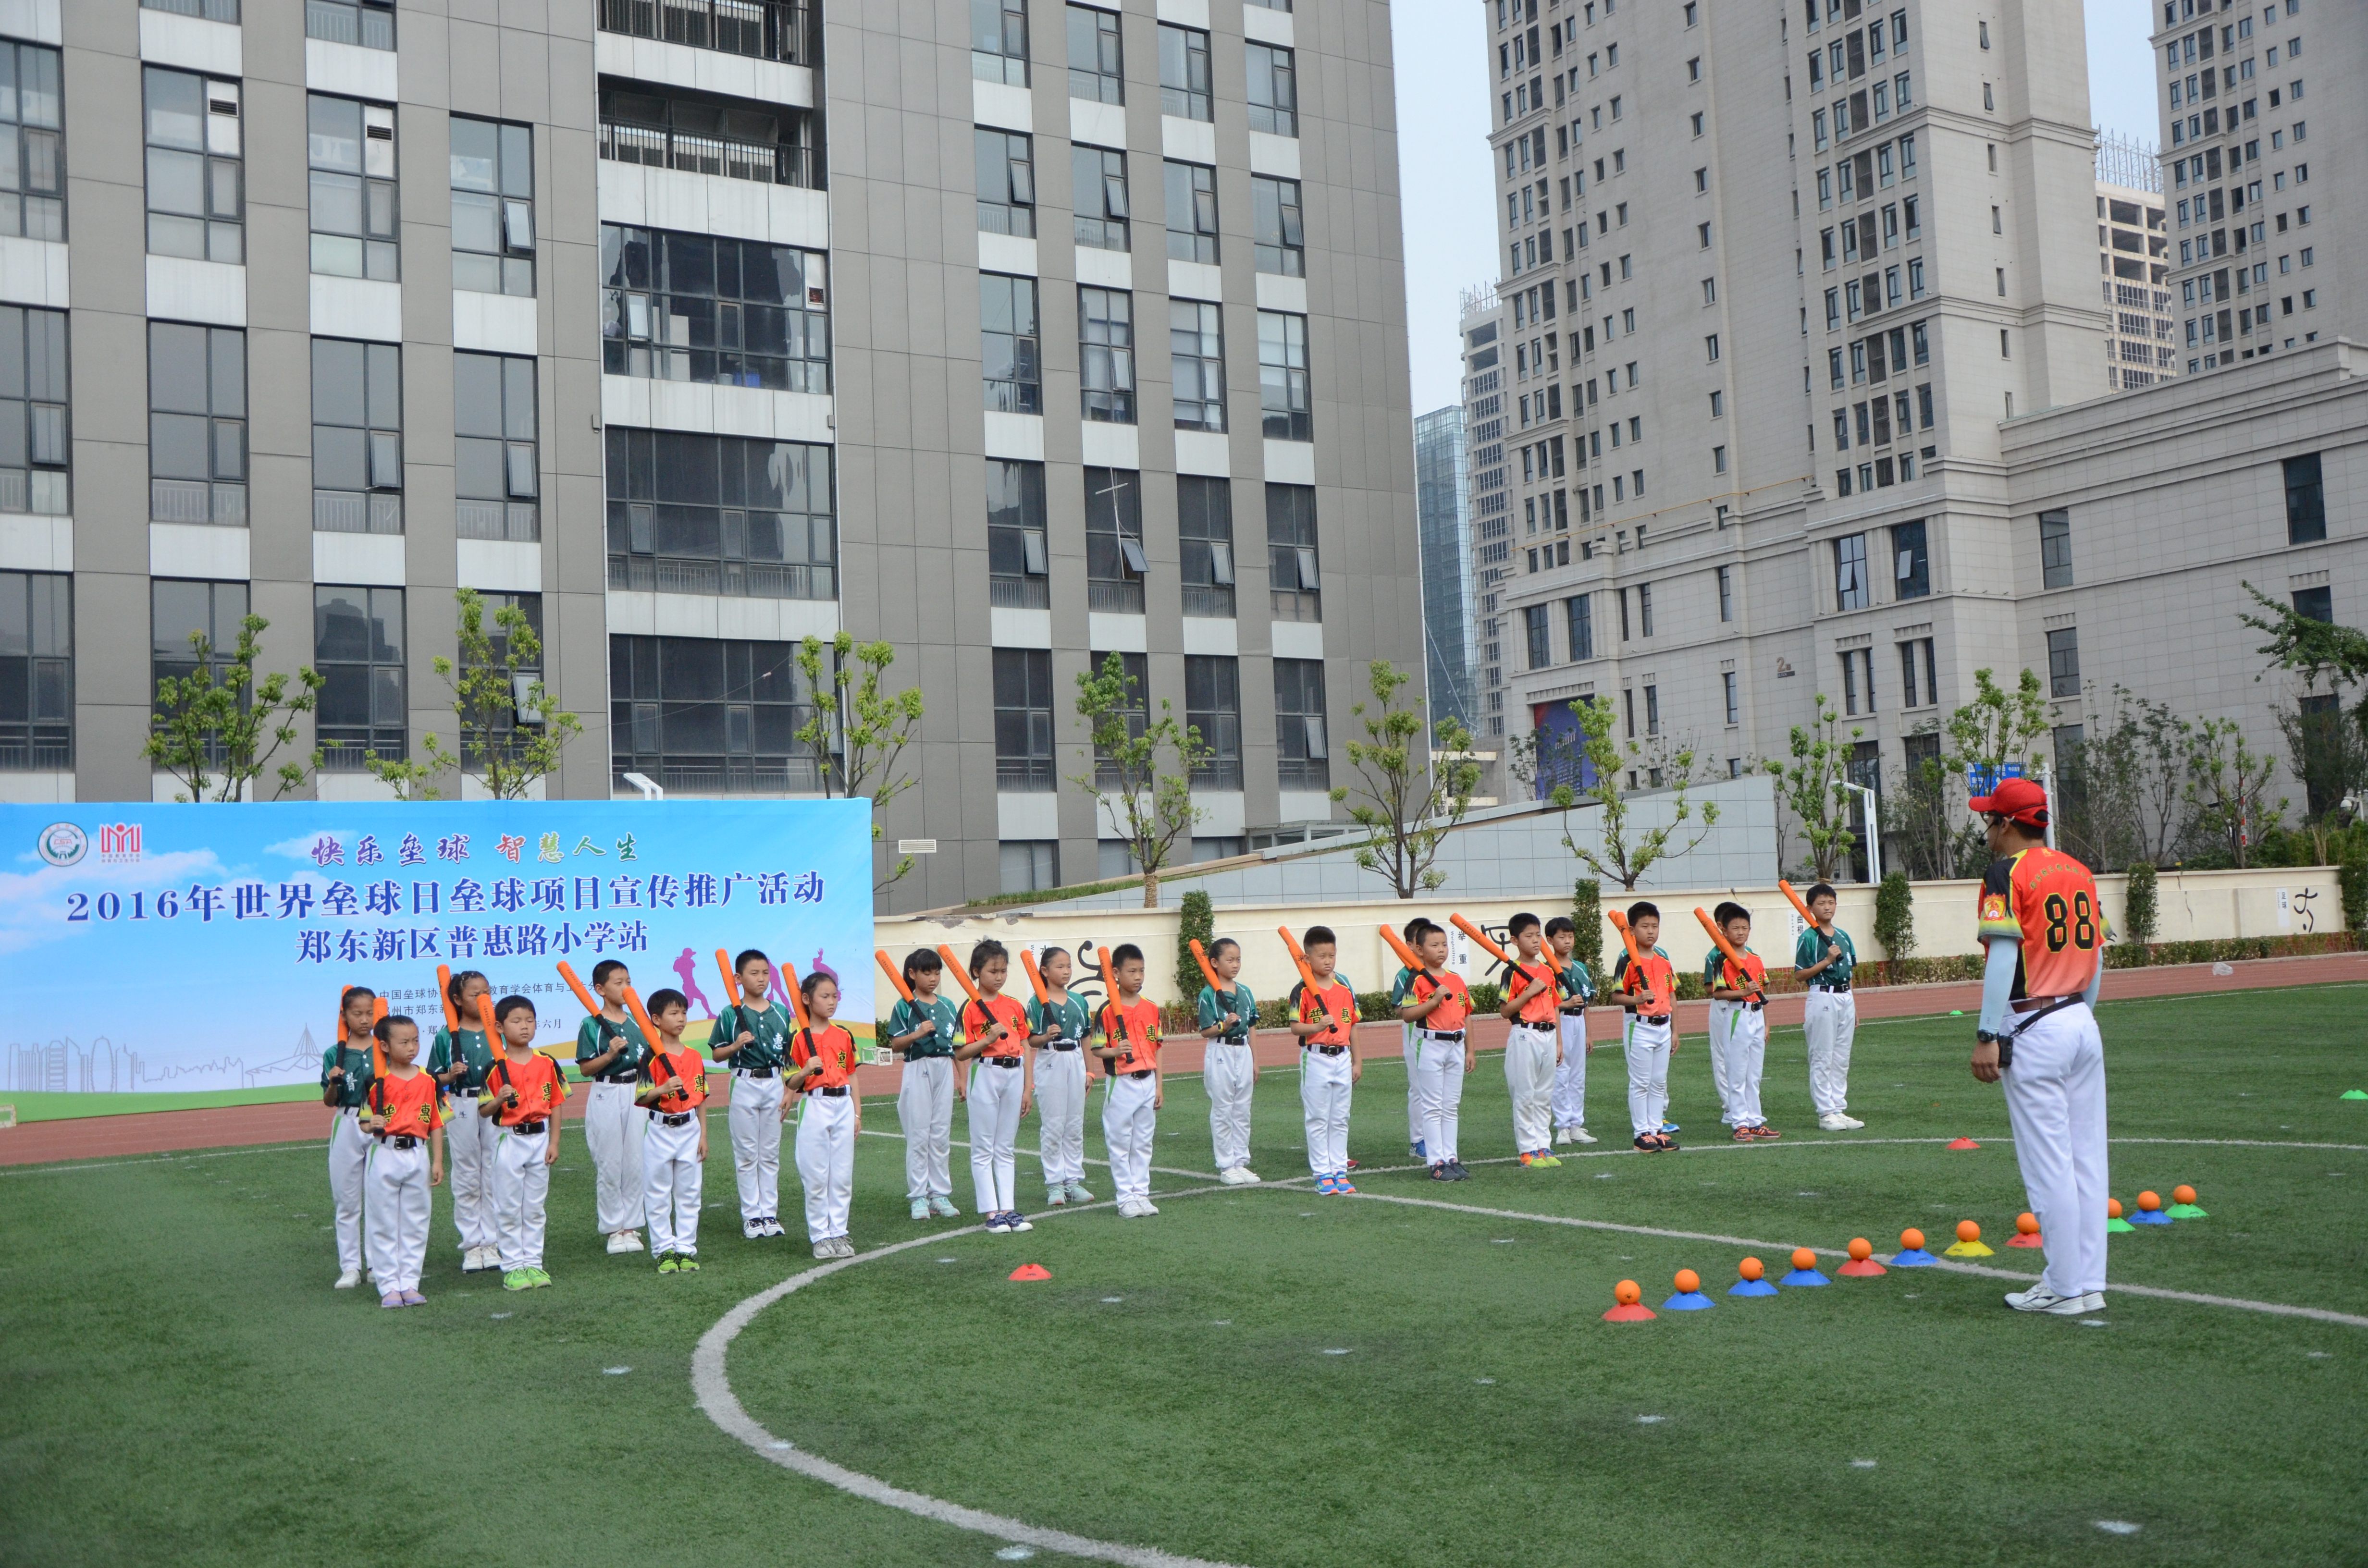 郑东新区普惠路小学师生展示垒球教学活动